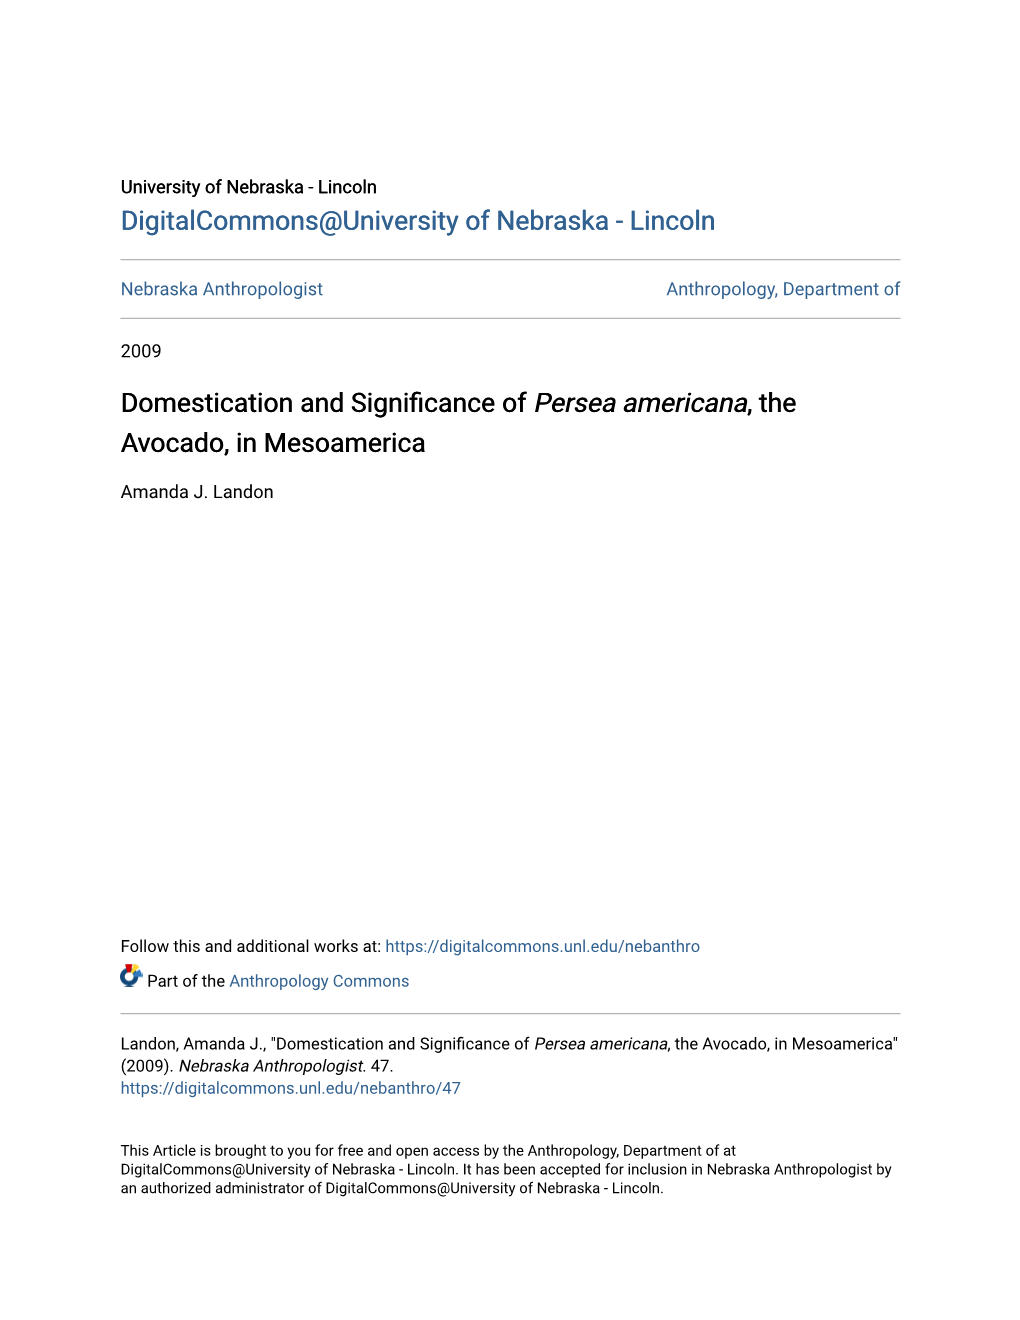 Domestication and Significance of Persea Americana, the Avocado, in Mesoamerica